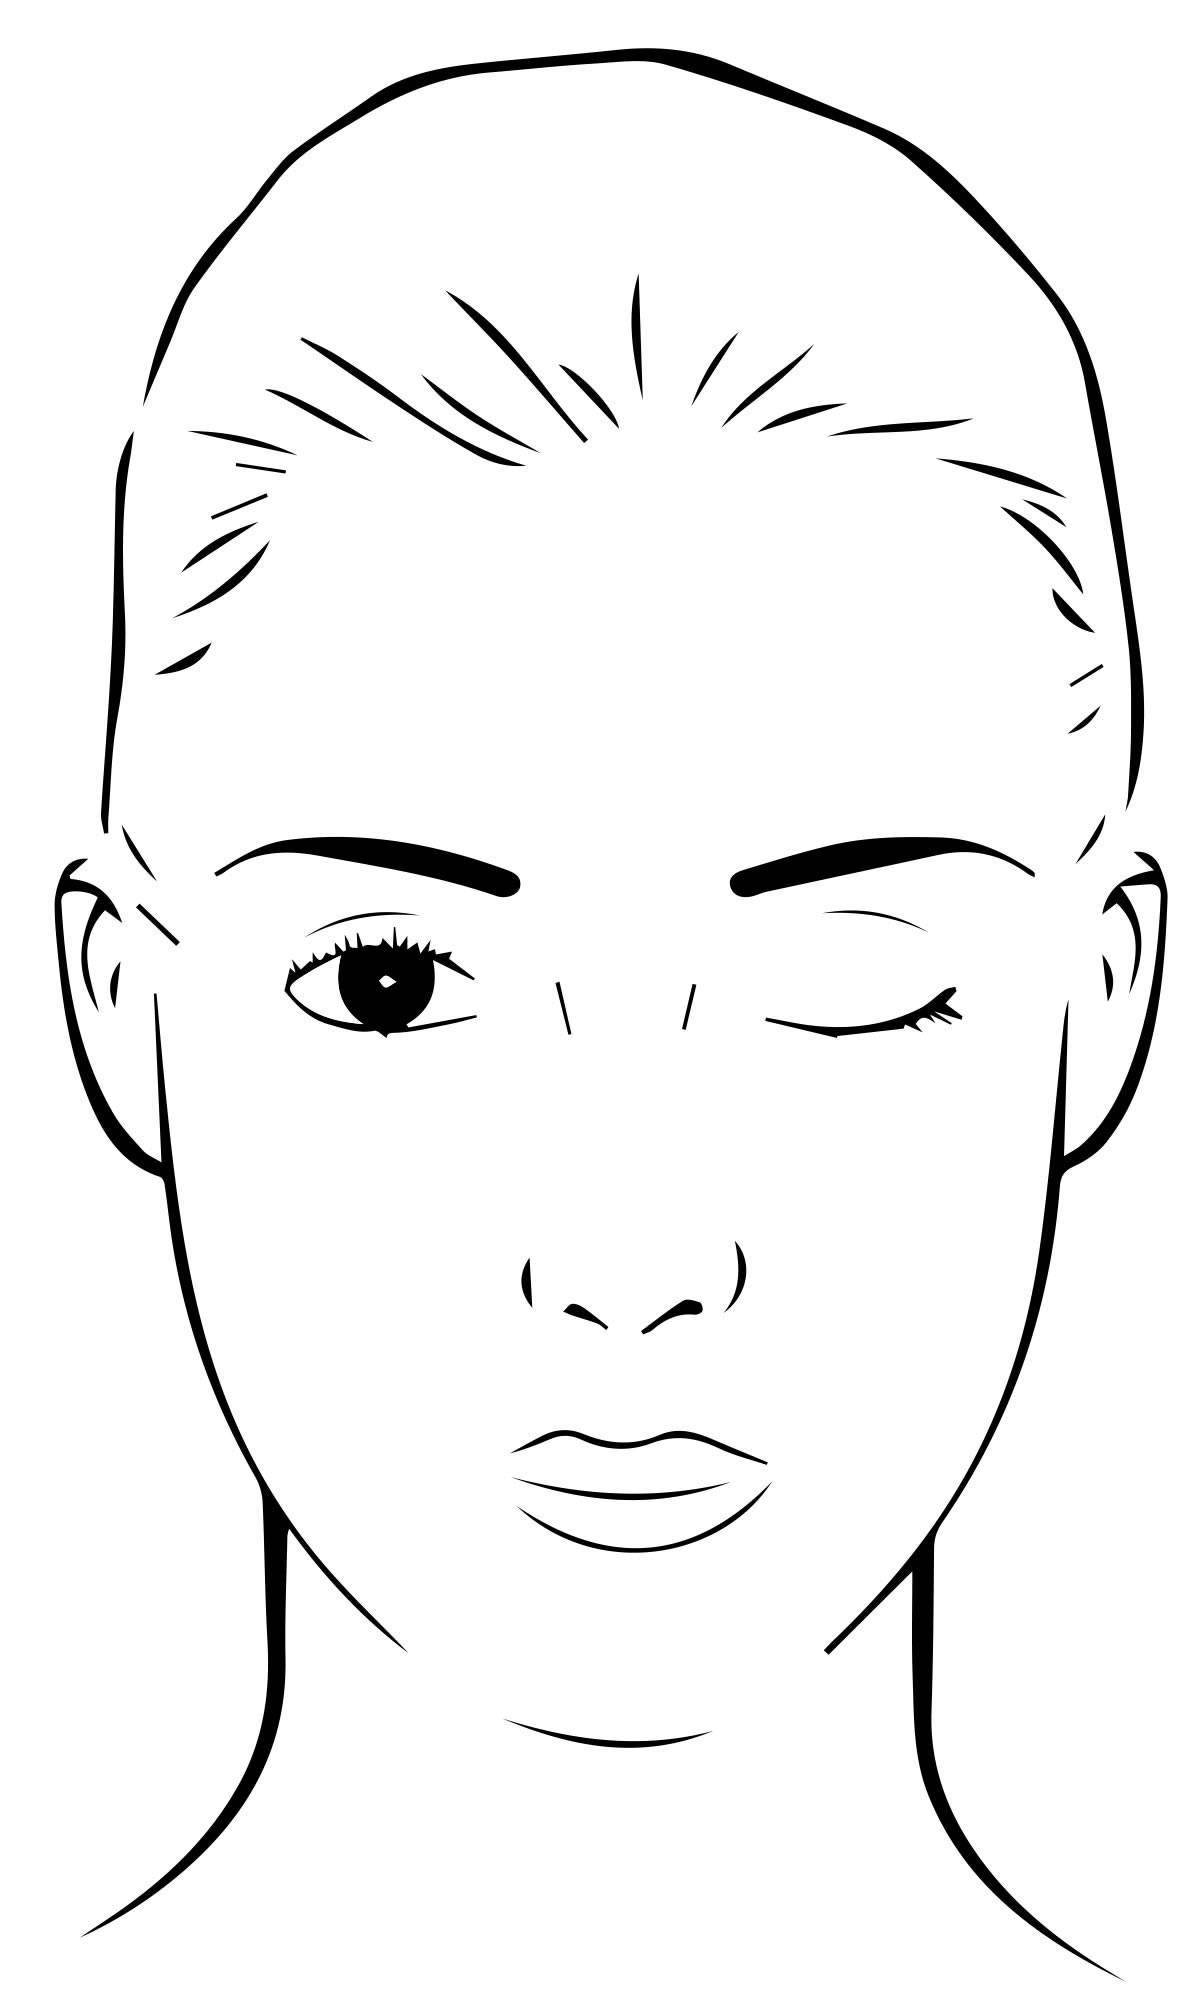 Увлекательная страница раскраски лица женщины с макияжем